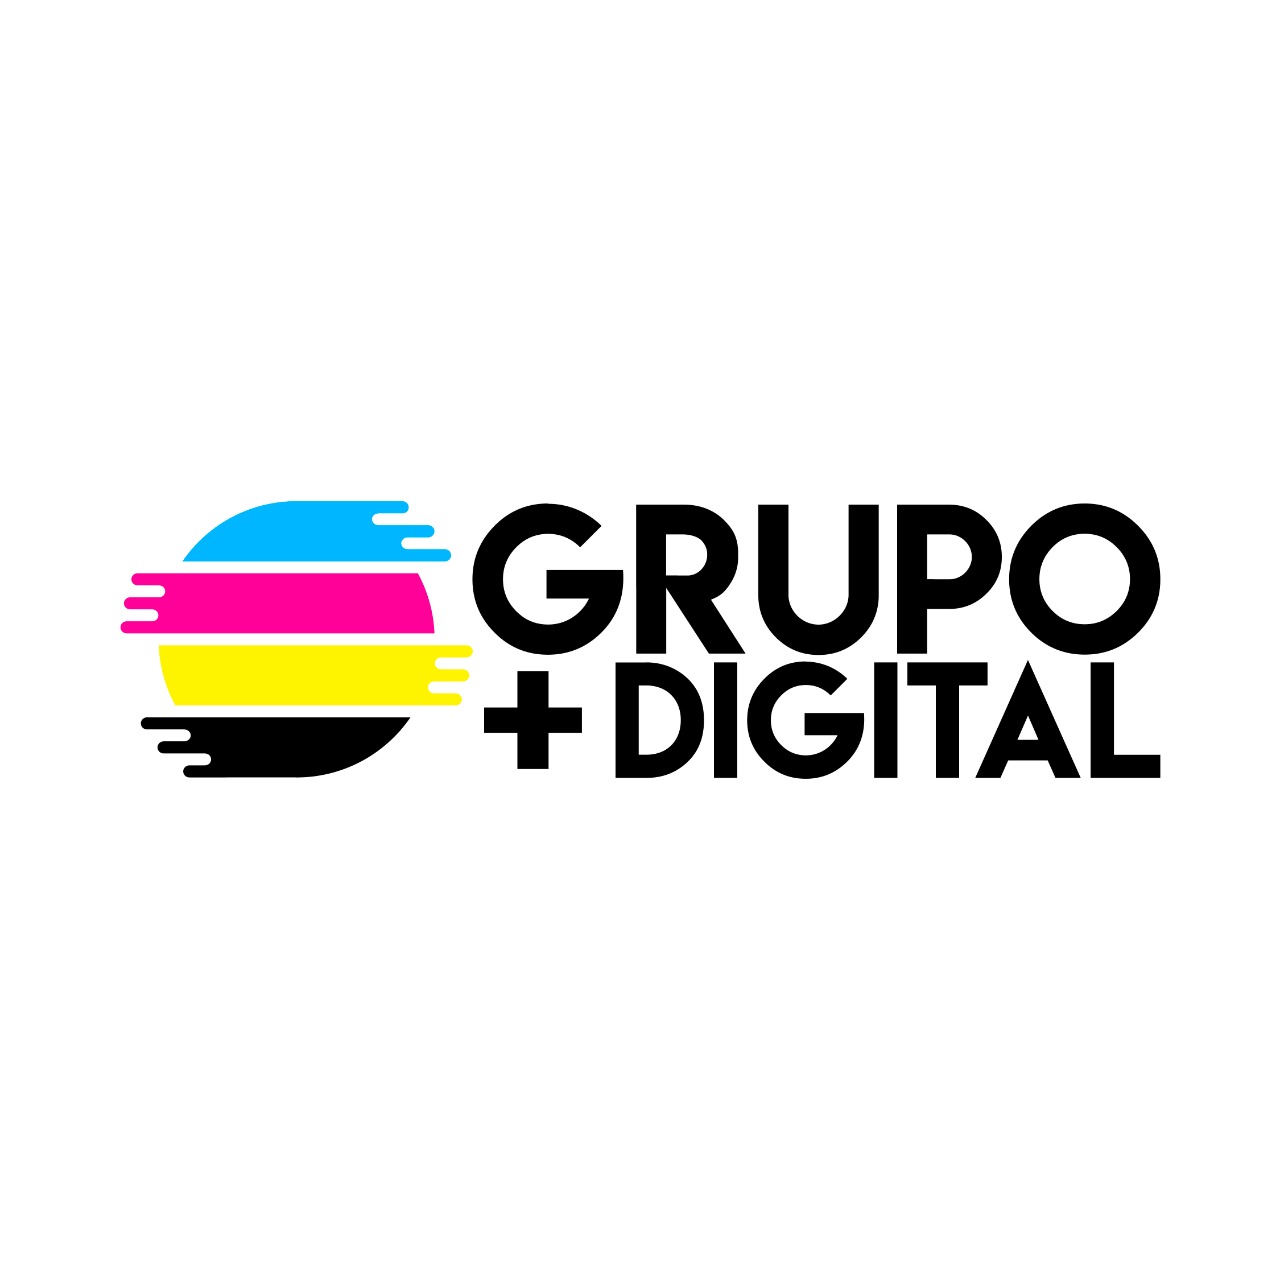 33 Grupo Mas Digital - KronalinE - Nuestros distribuidores